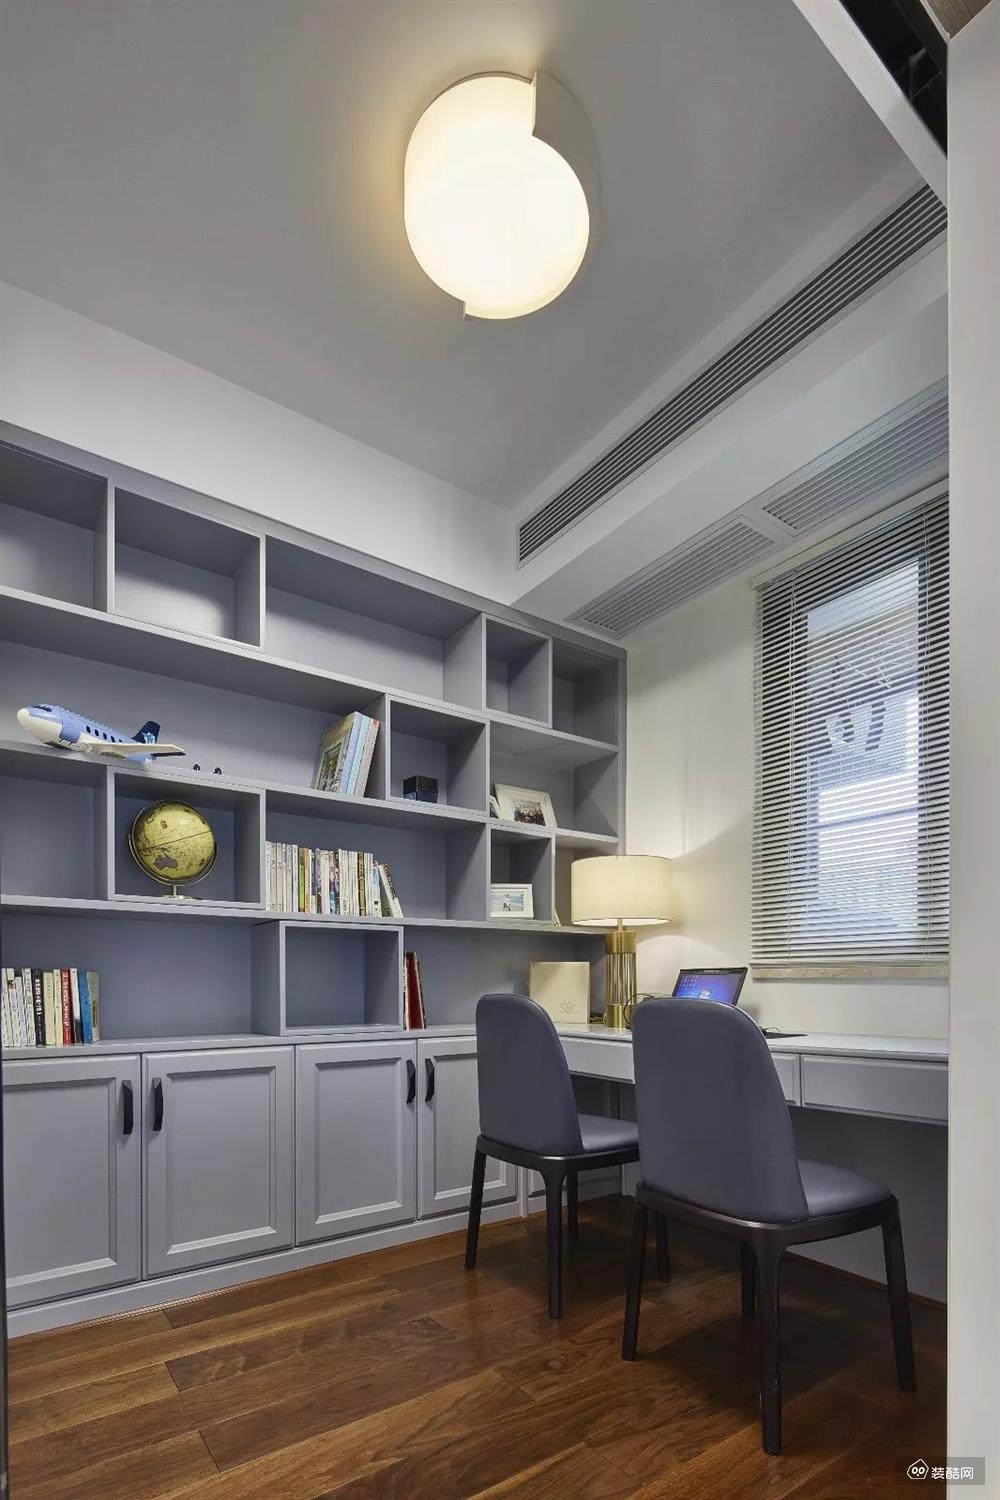 这是独立的书房，靠窗摆放双人书桌，嵌入墙面的书架，和卧室门一样颜色的设计，让整个空间的整体感变得更强。